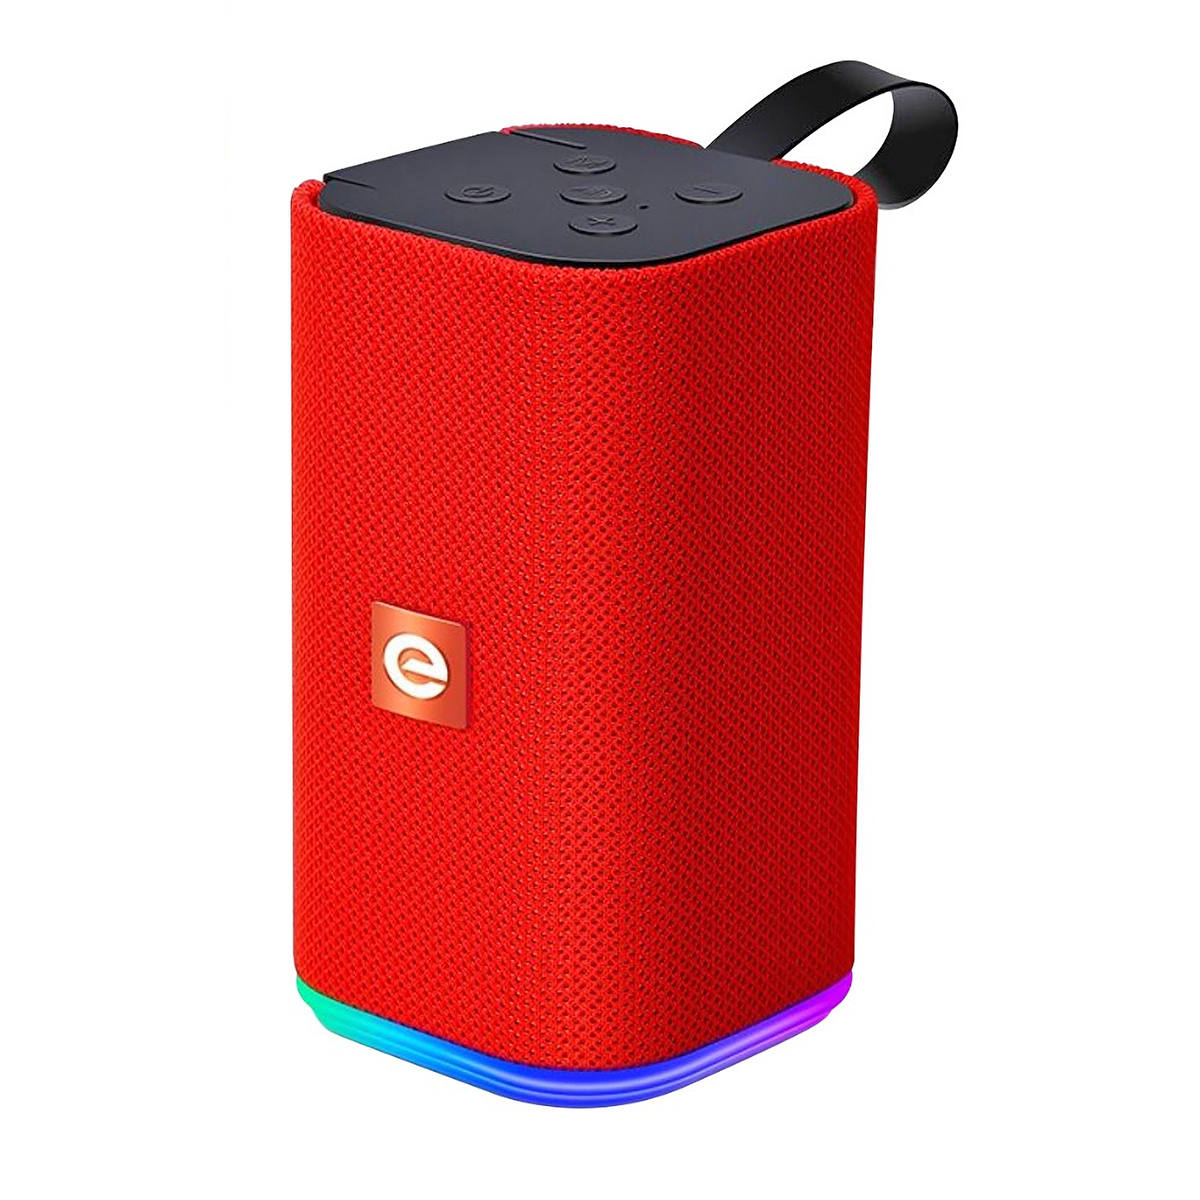 Caixa de Som Bluetooth Portátil Multimídia FM SD P2 USB Mic SoundBox LED RGB com 7 Cores Exbom CS-M31BTL Vermelha